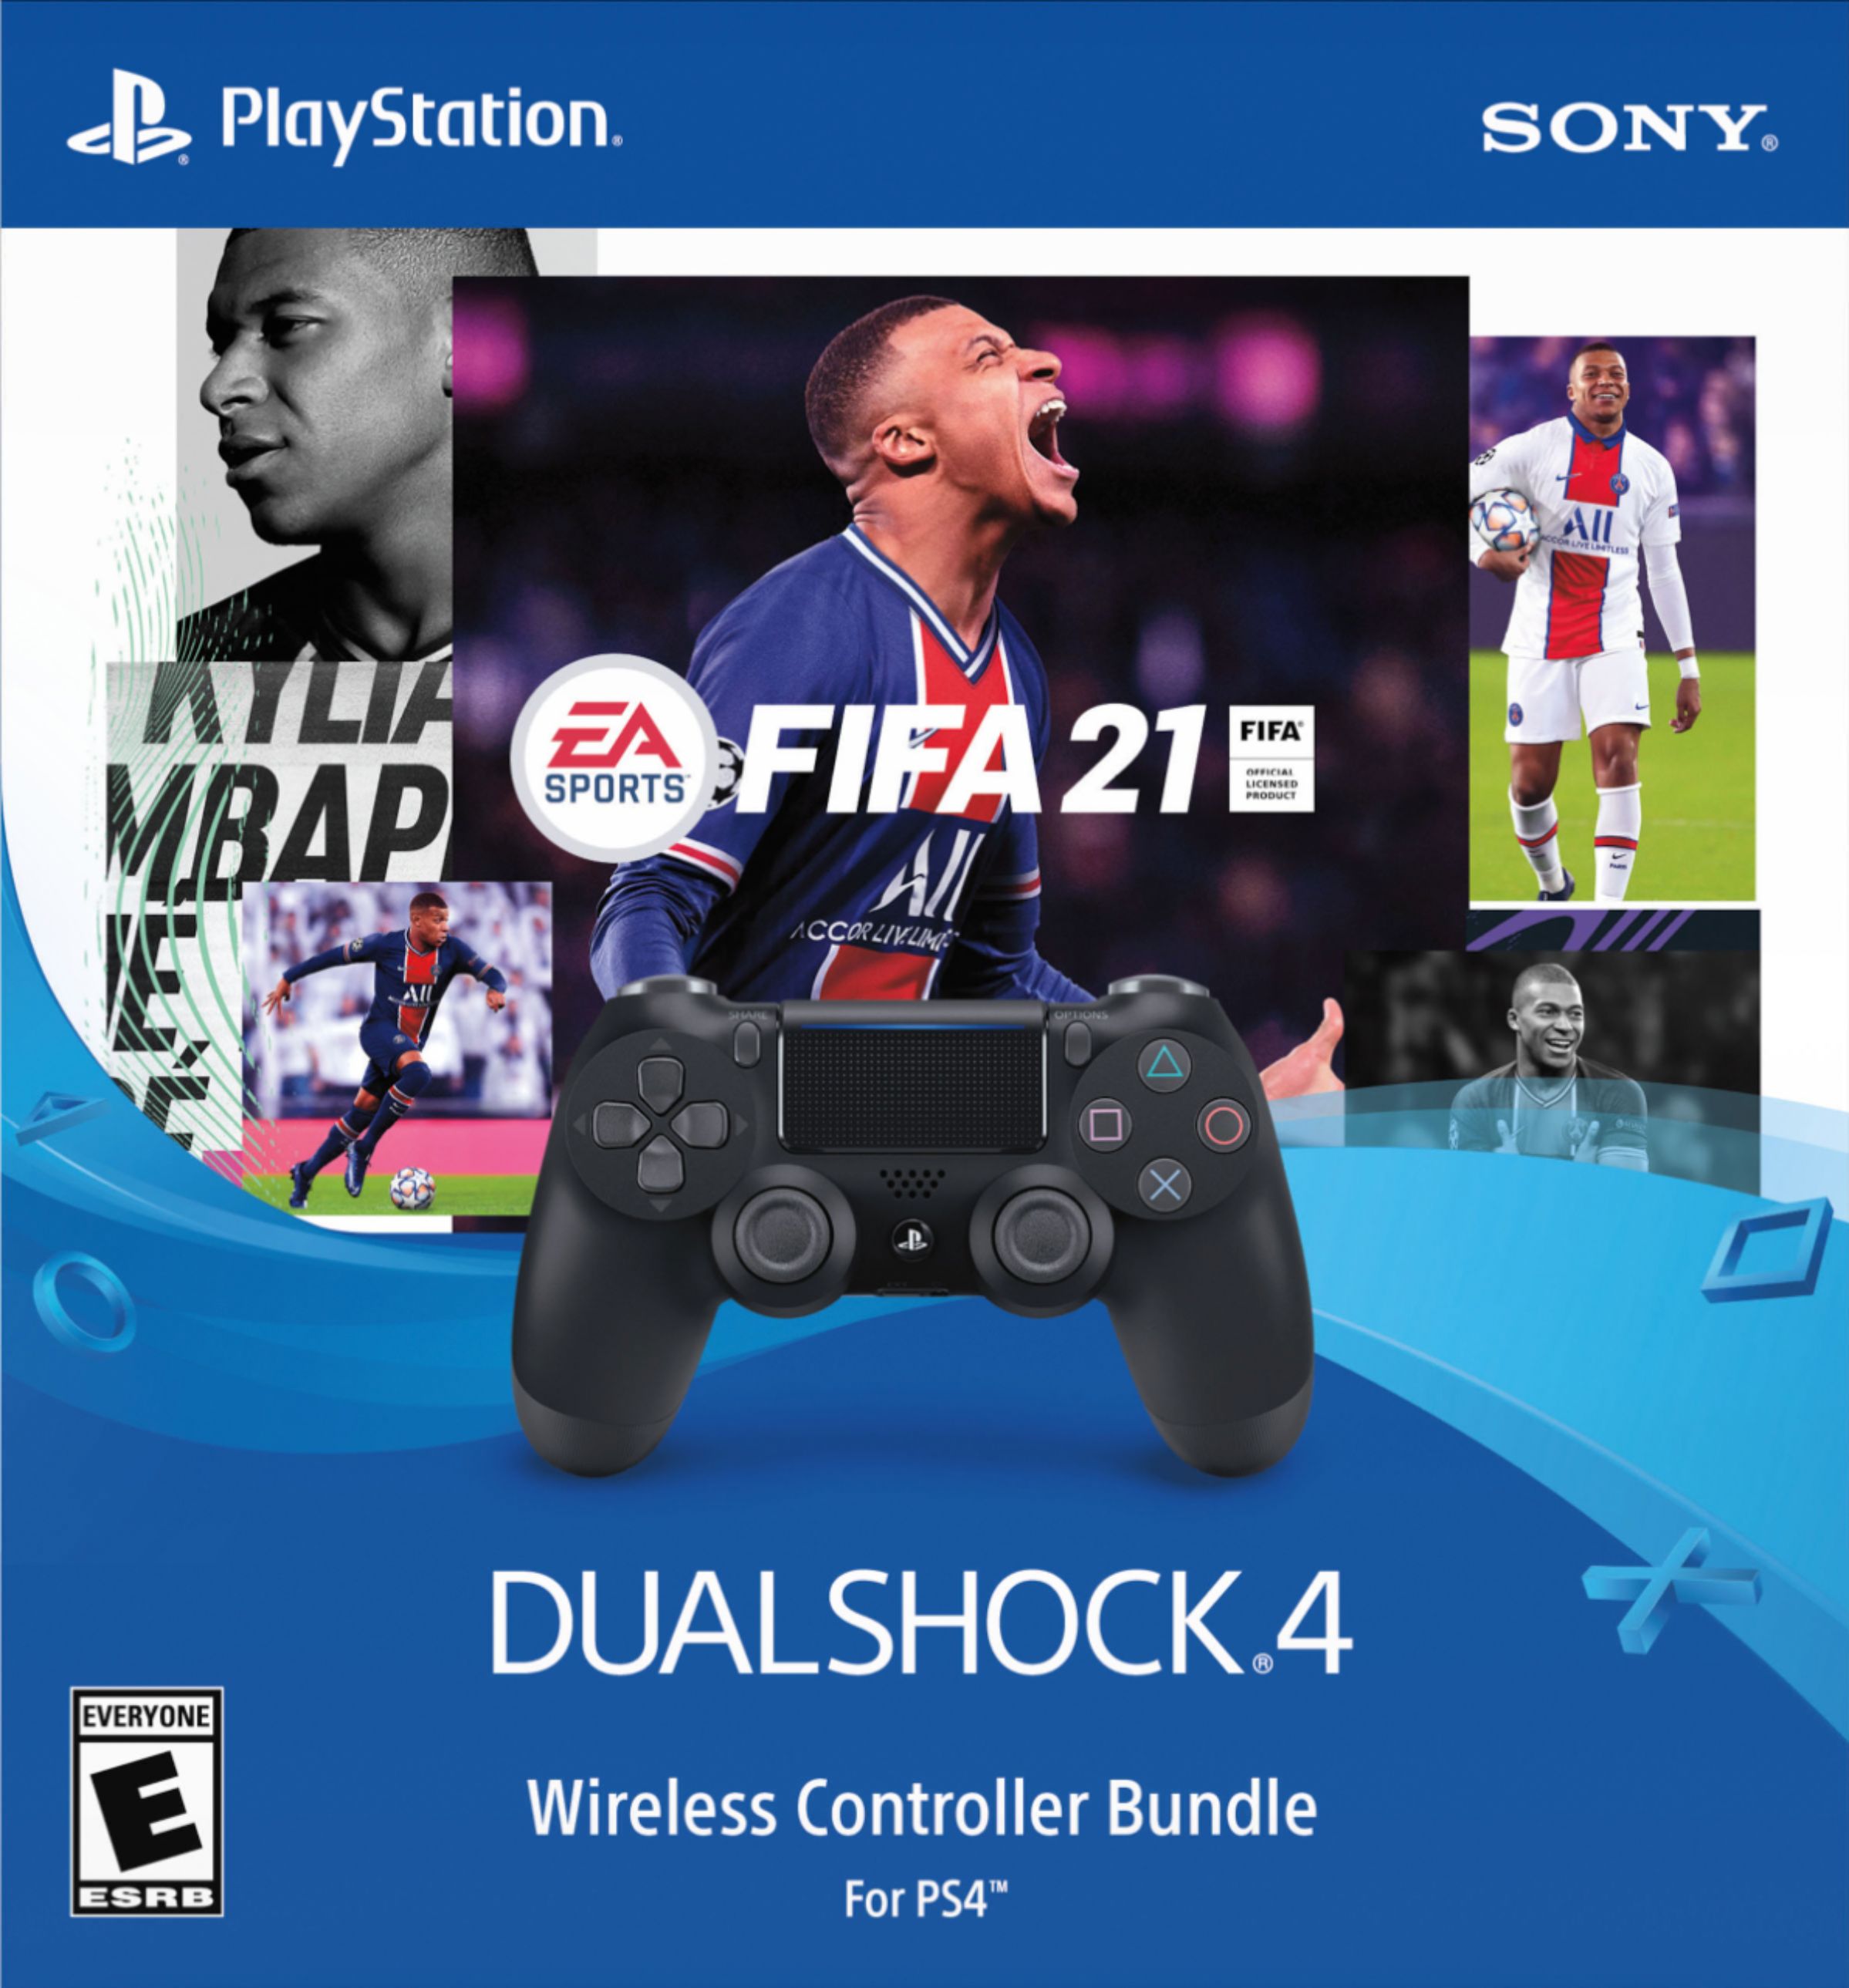  FIFA 21 (PS4) : Video Games